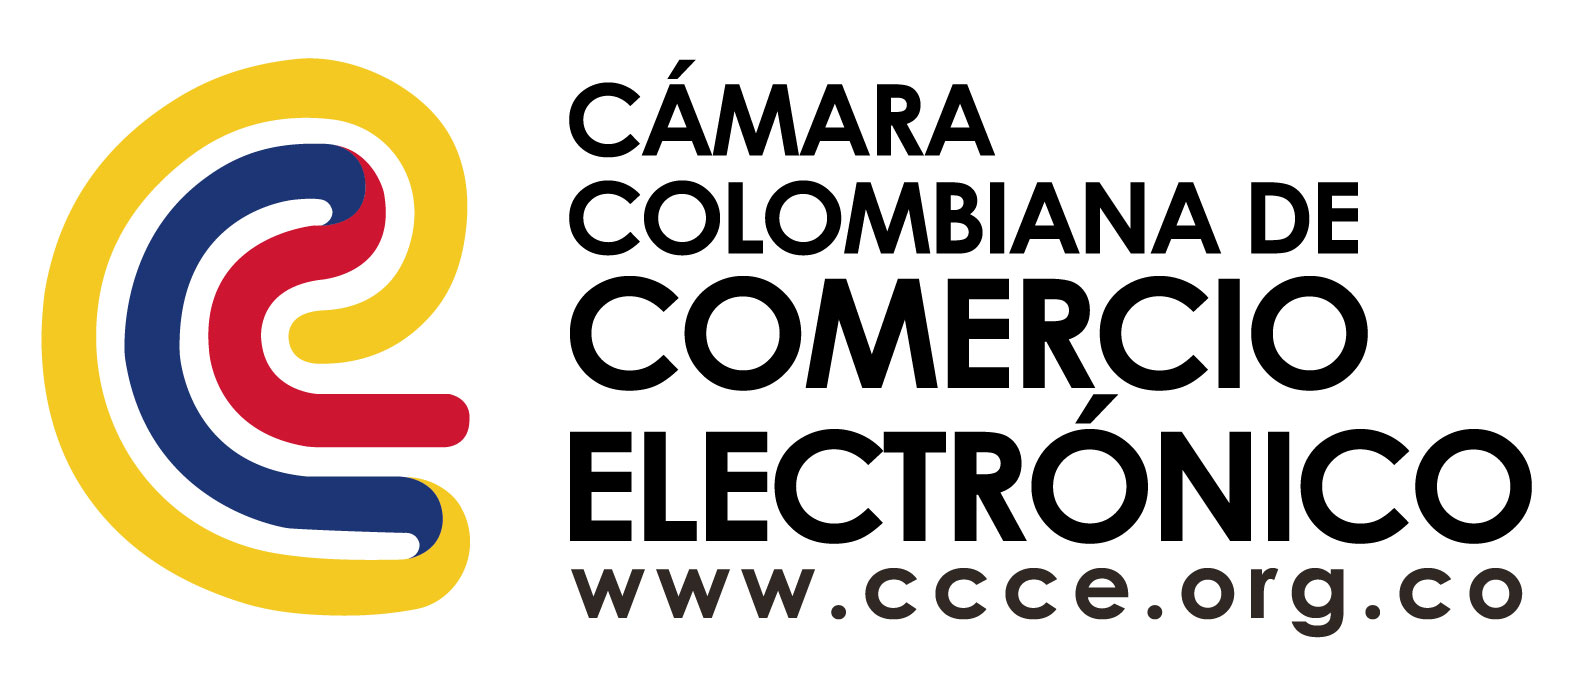 Cámara Colombiana de Comercio Electrónico 